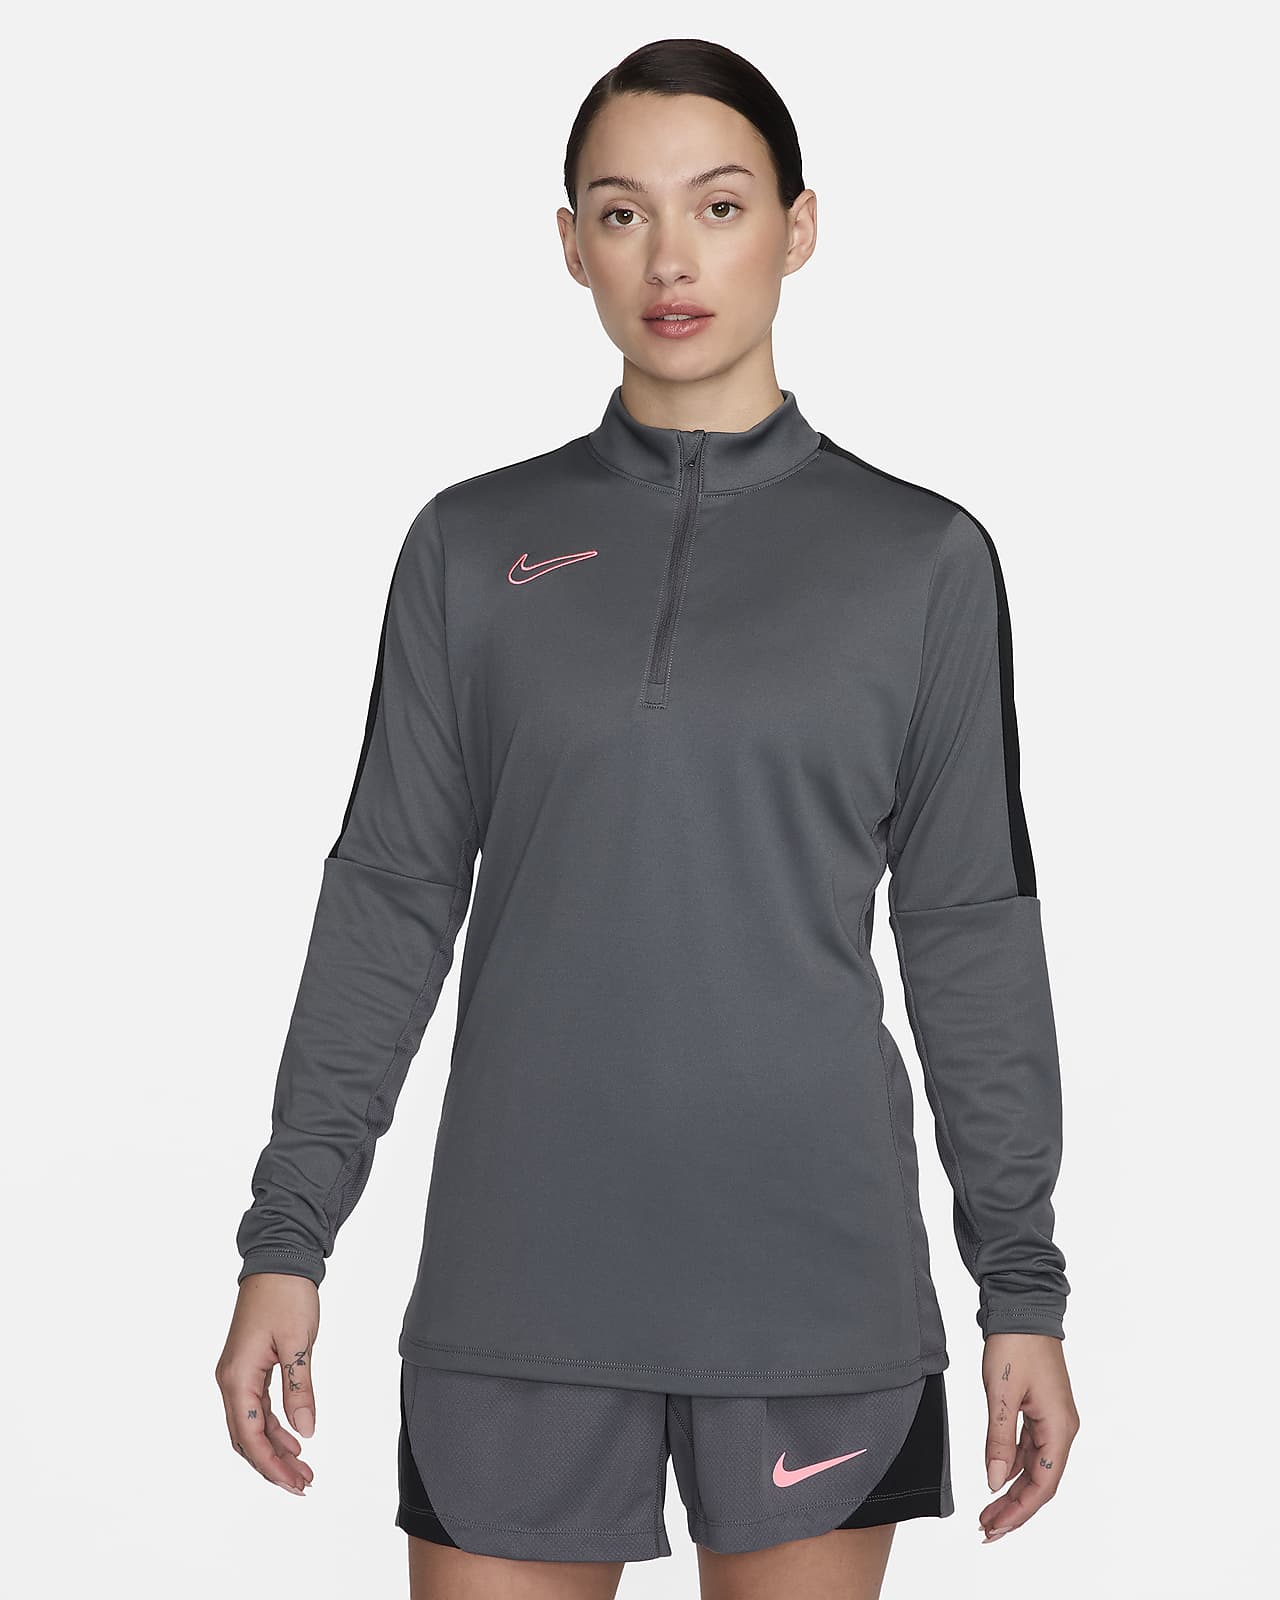 Nike Dri-FIT Academy női futball-melegítőfelső